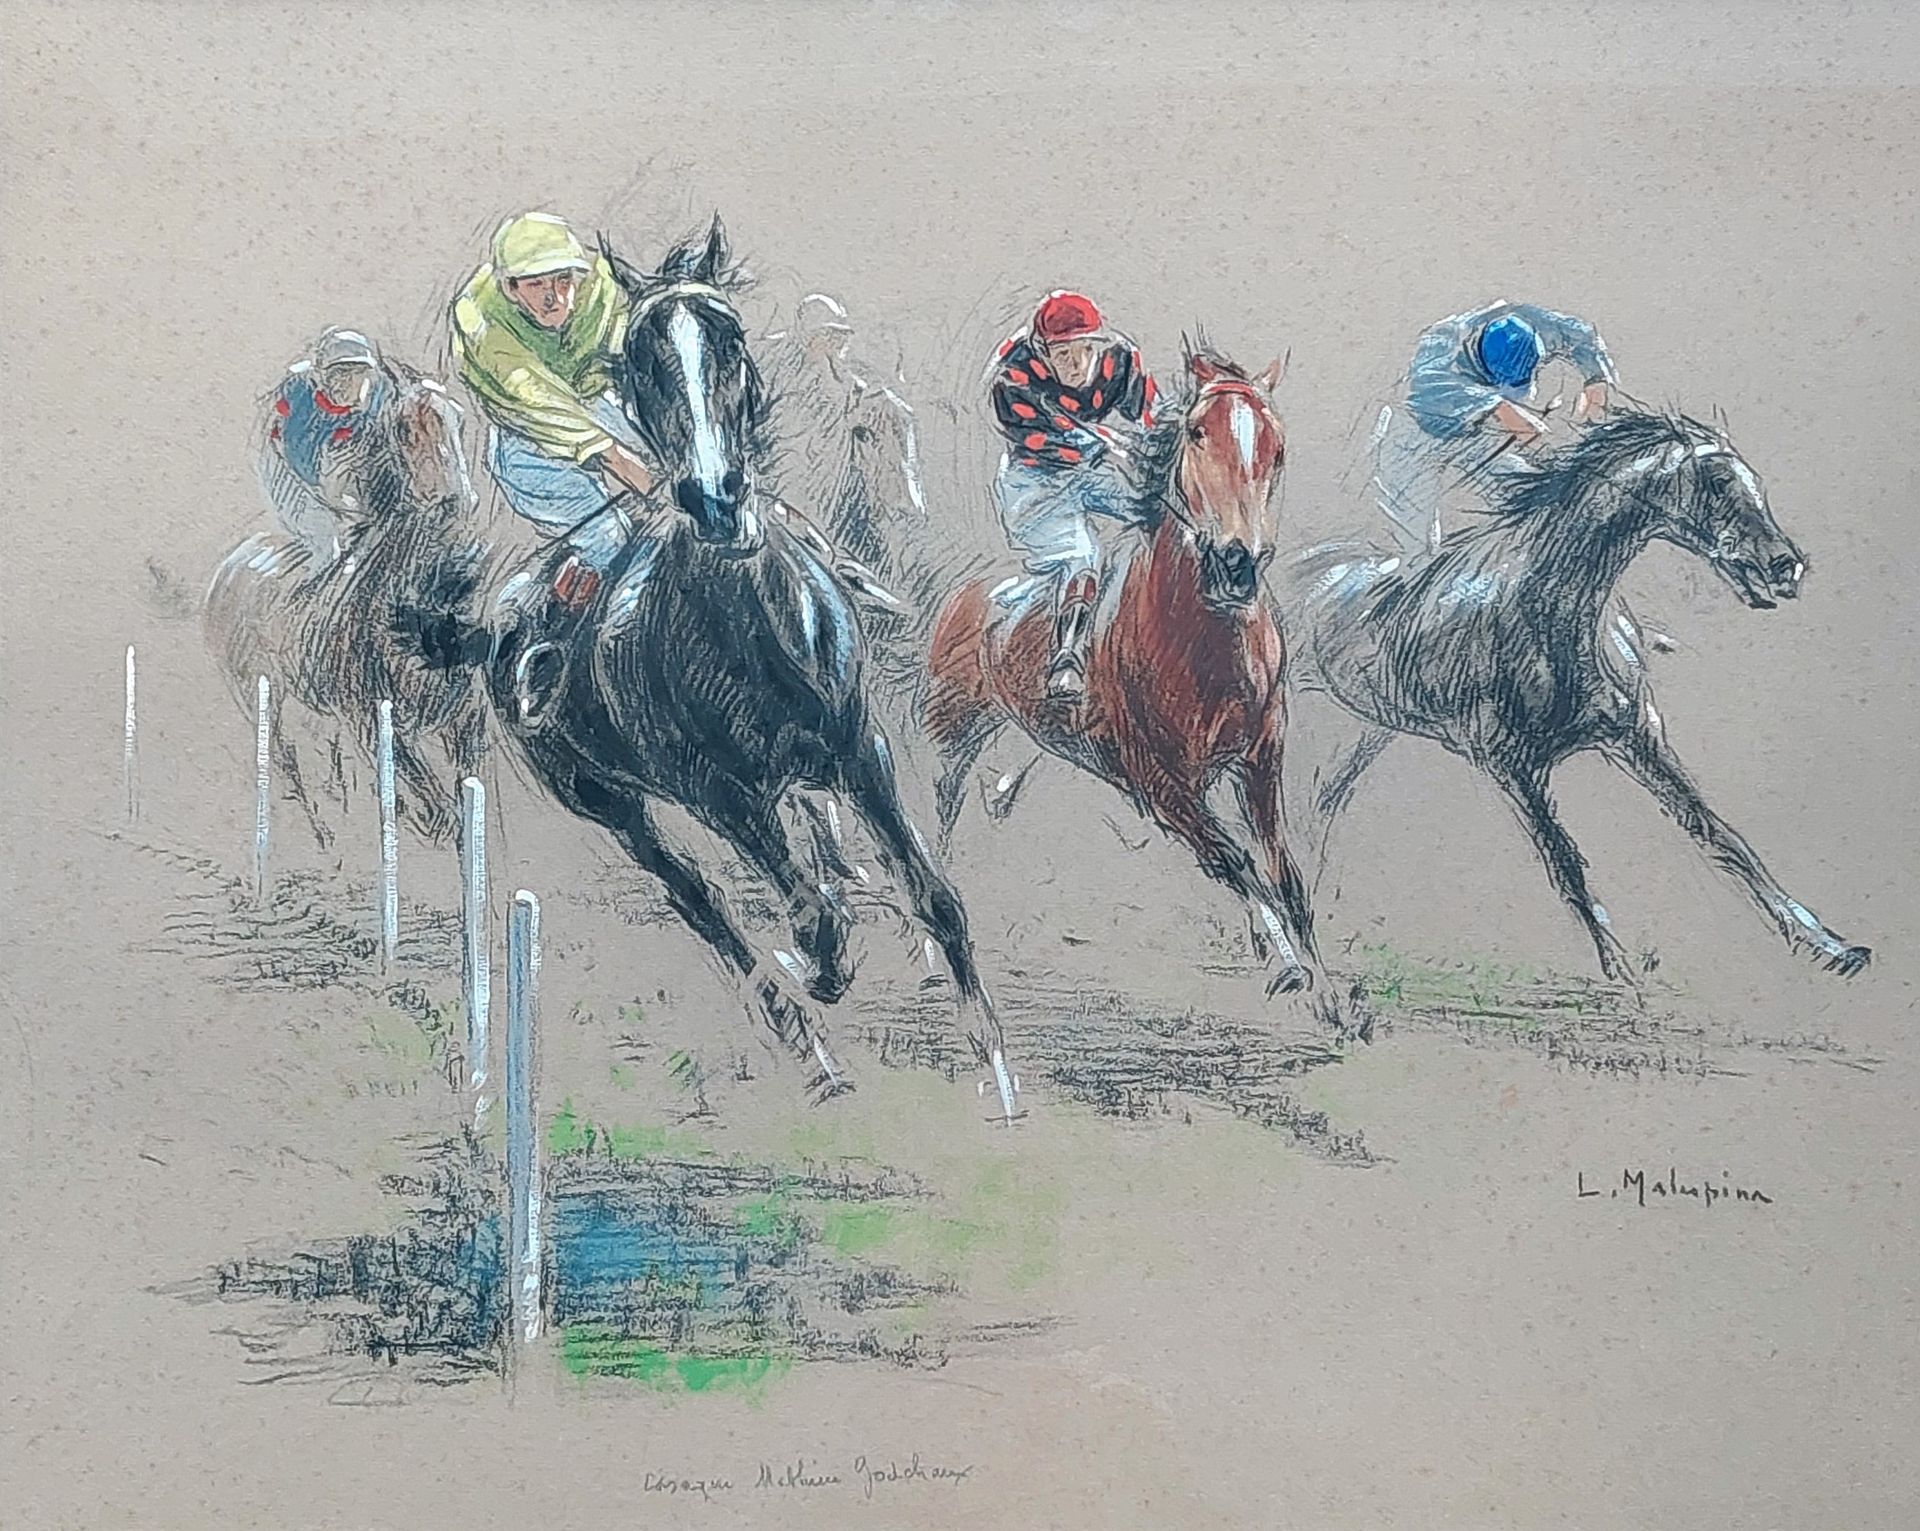 L MALESPINA (1874 - 1940) 
骑马赛马 增强版画 45 x 56 cm 展开查看